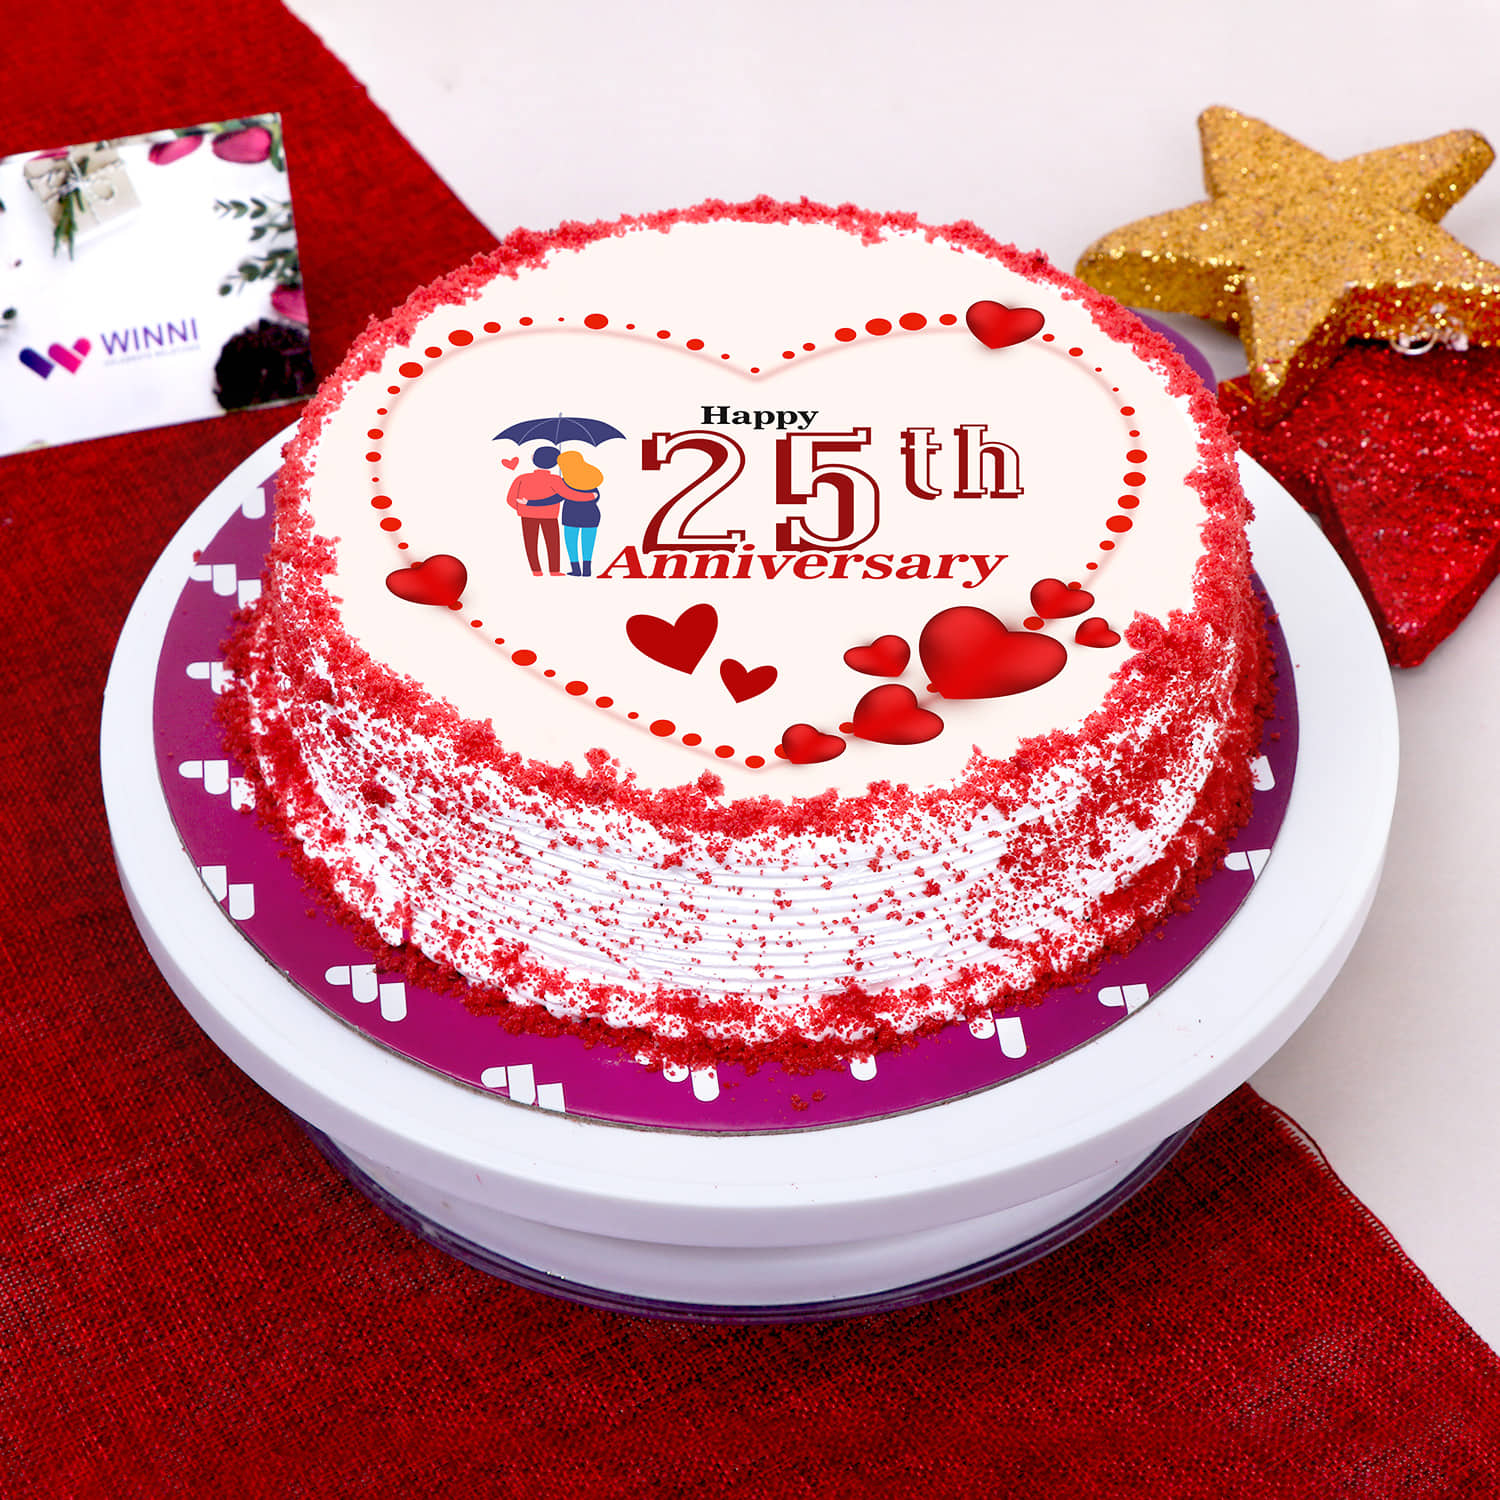 Couple Goals Anniversary Cake | Winni.in